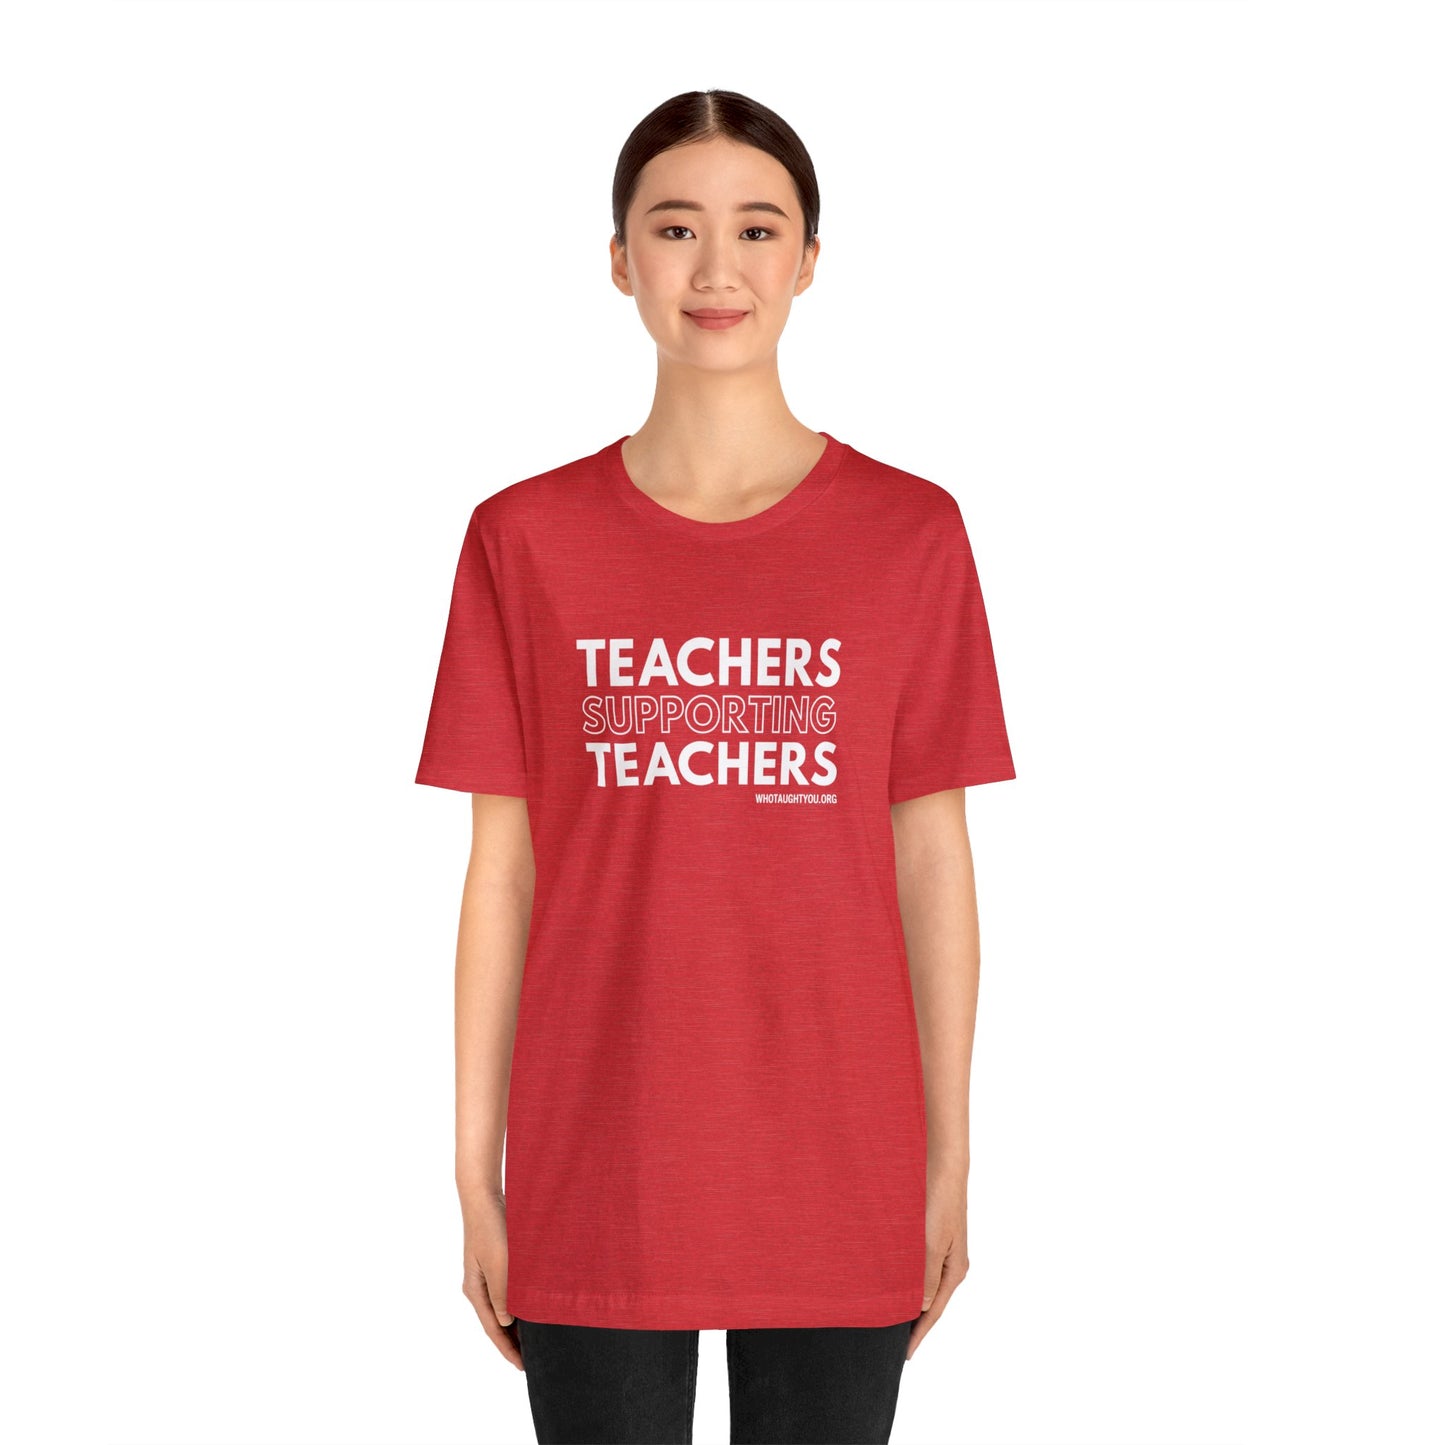 TEACHERS SUPPORTING TEACHERS Tri-blend T-shirt